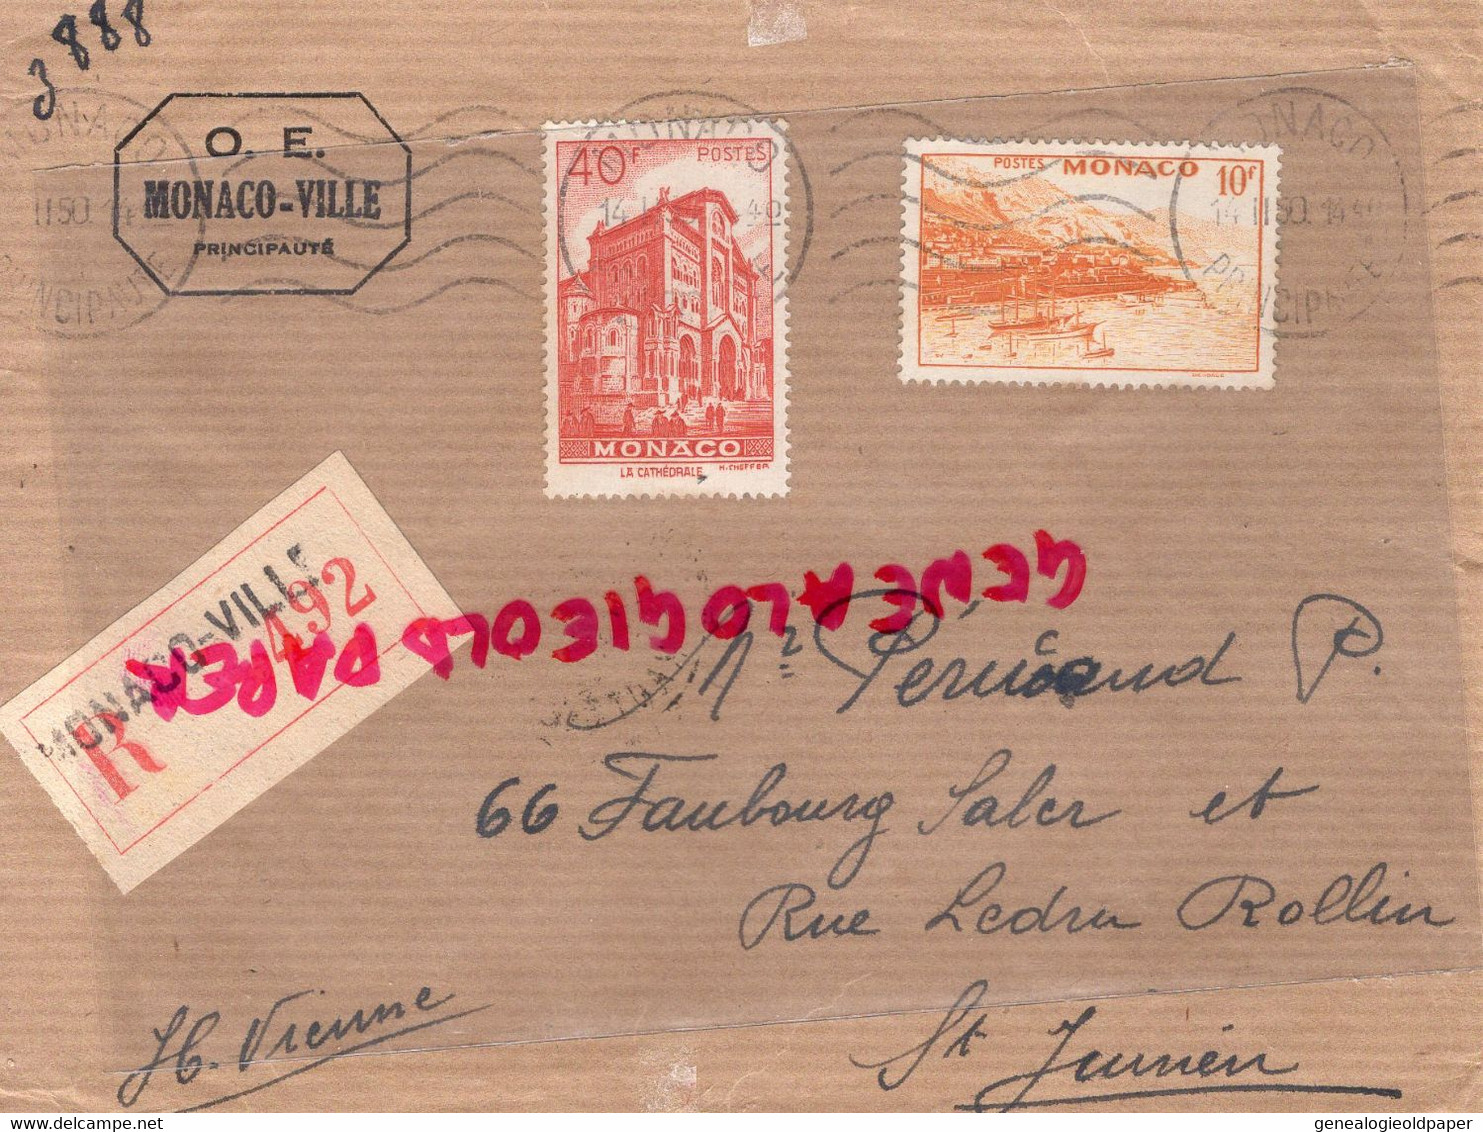 MONACO- MARCOPHILIE TIMBRE 40 F 10 F- -PERUCAUD MEGISSERIE SAINT JUNIEN RECOMMANDE1950 - Postmarks